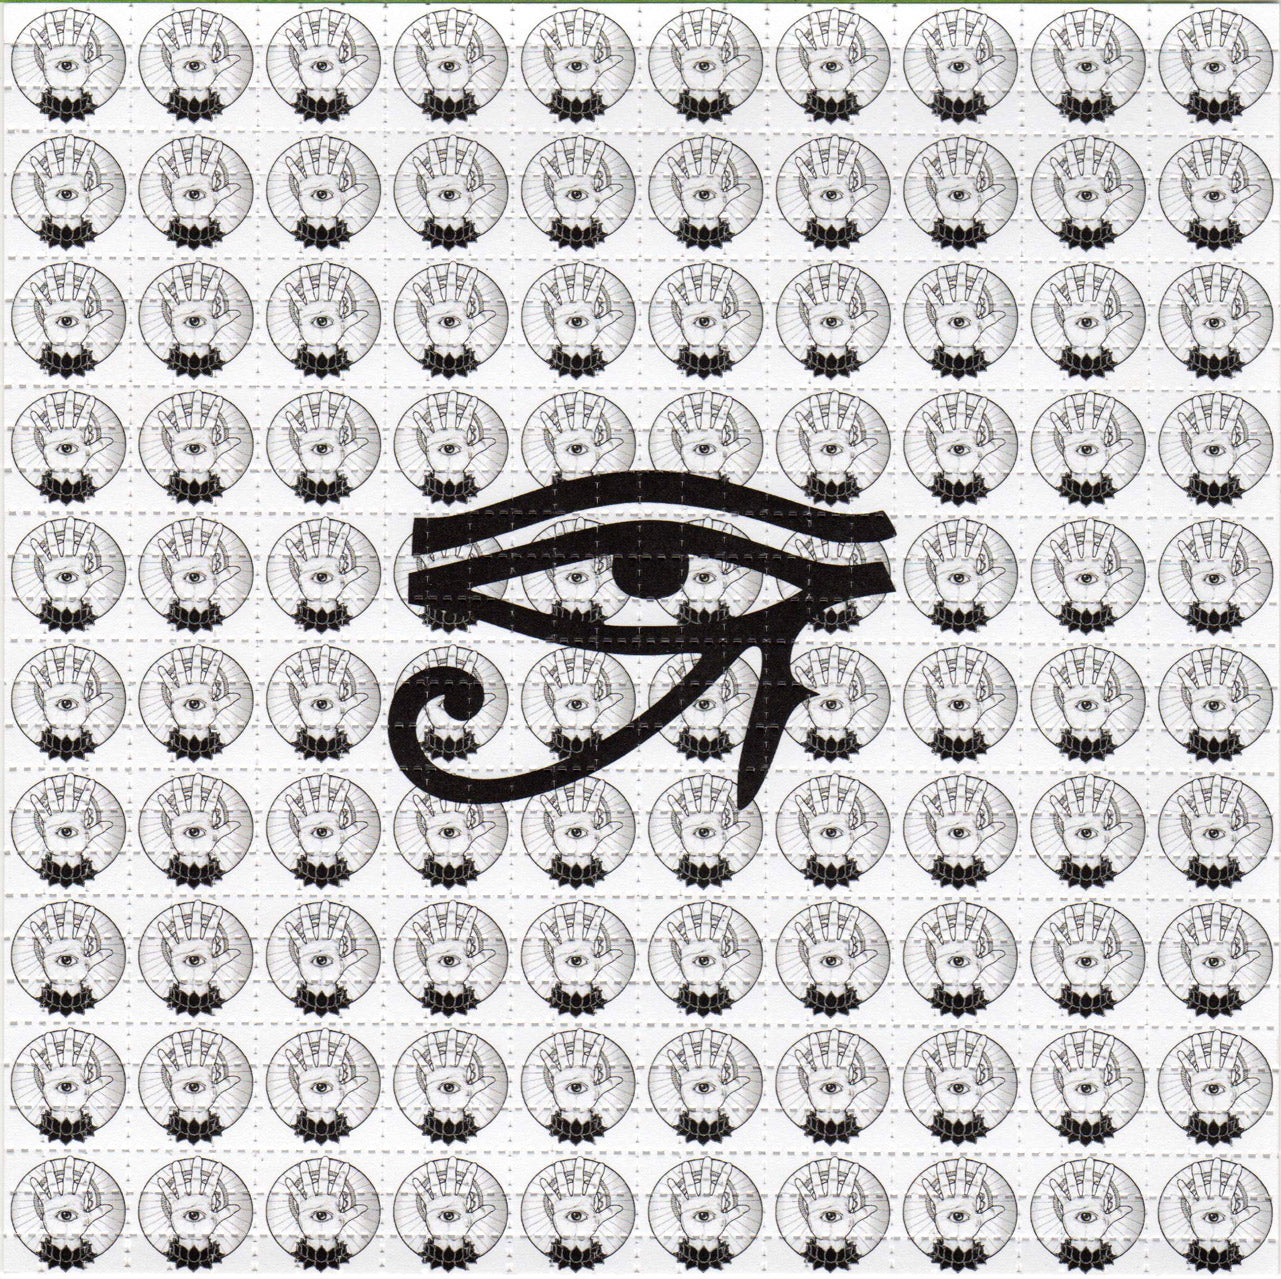 All Seeing Eye of Horus LSD blotter art print